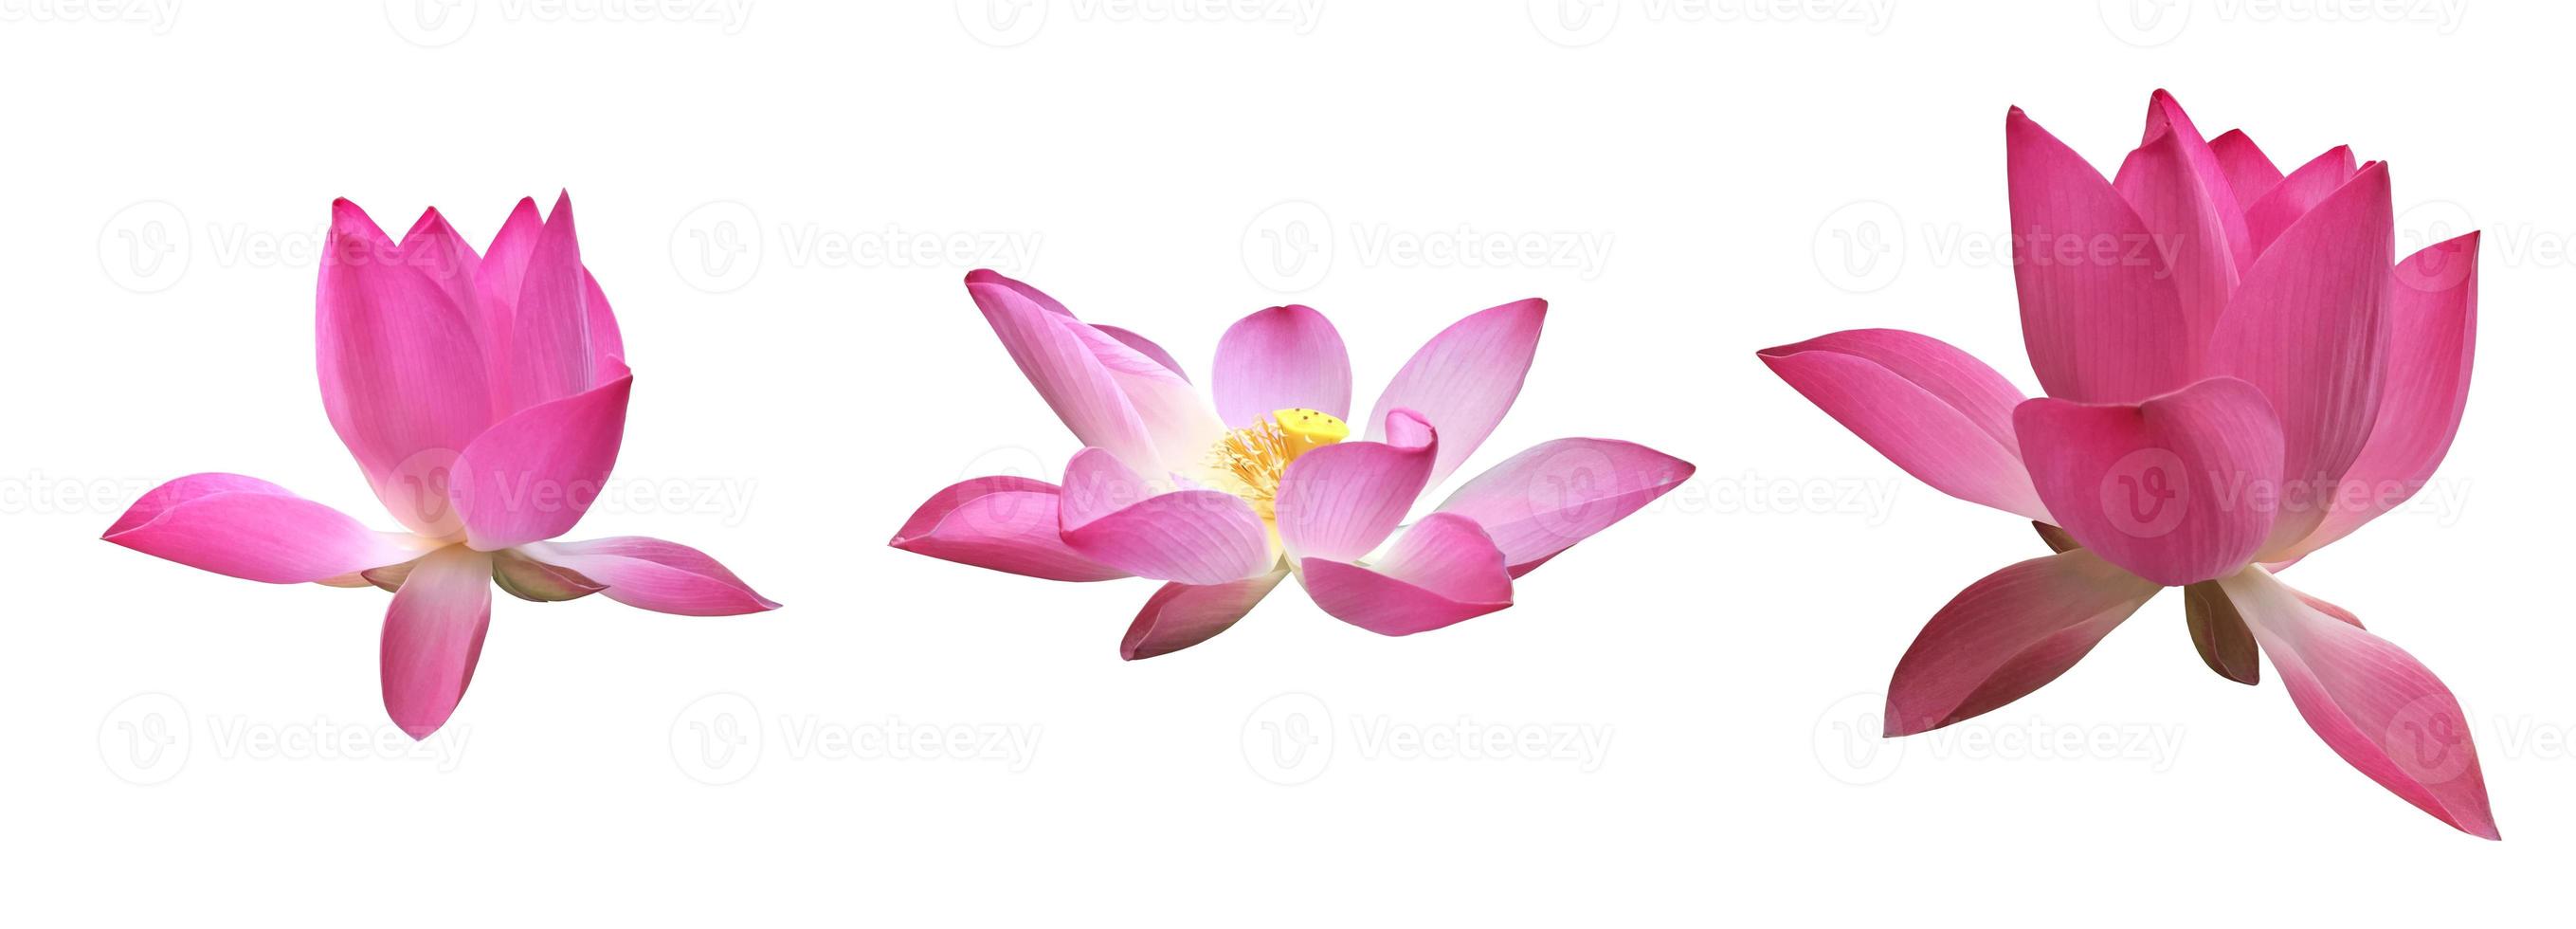 isolerade rosa näckros eller lotusblomma med urklippsbanor. foto